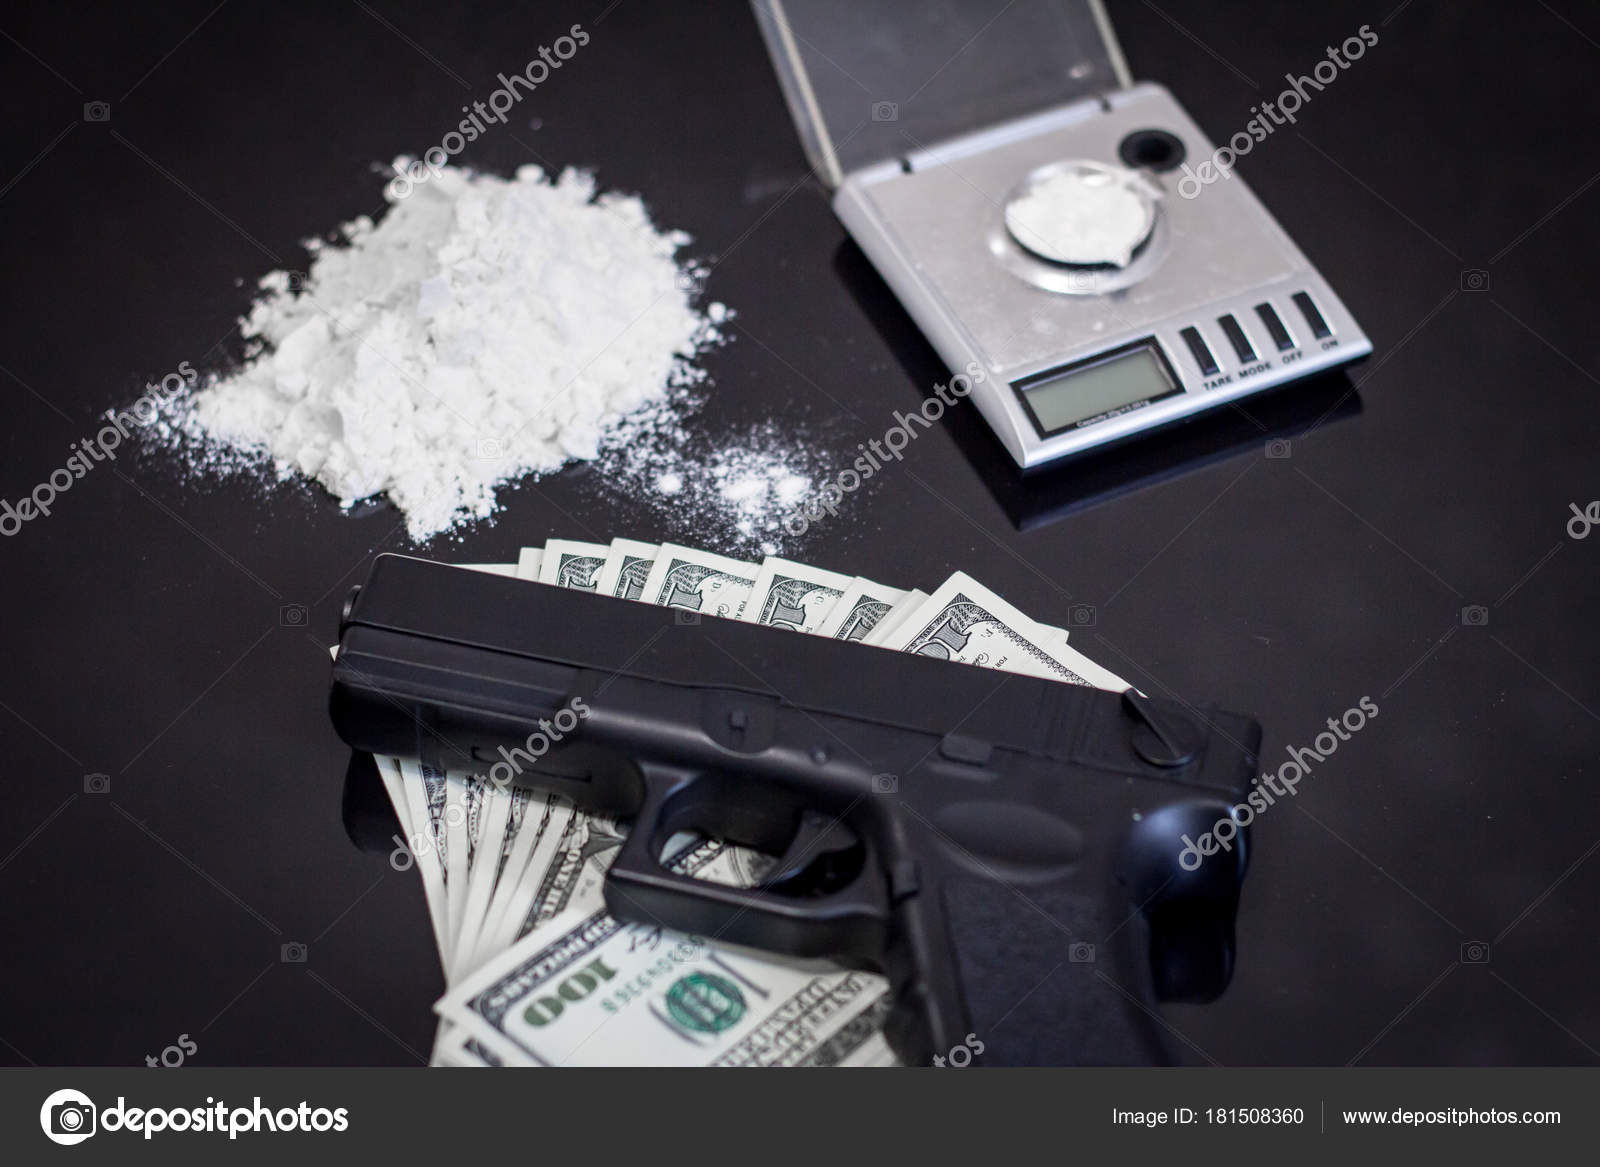 https://st3.depositphotos.com/8067450/18150/i/1600/depositphotos_181508360-stock-photo-criminal-concept-cocain-powder-black.jpg